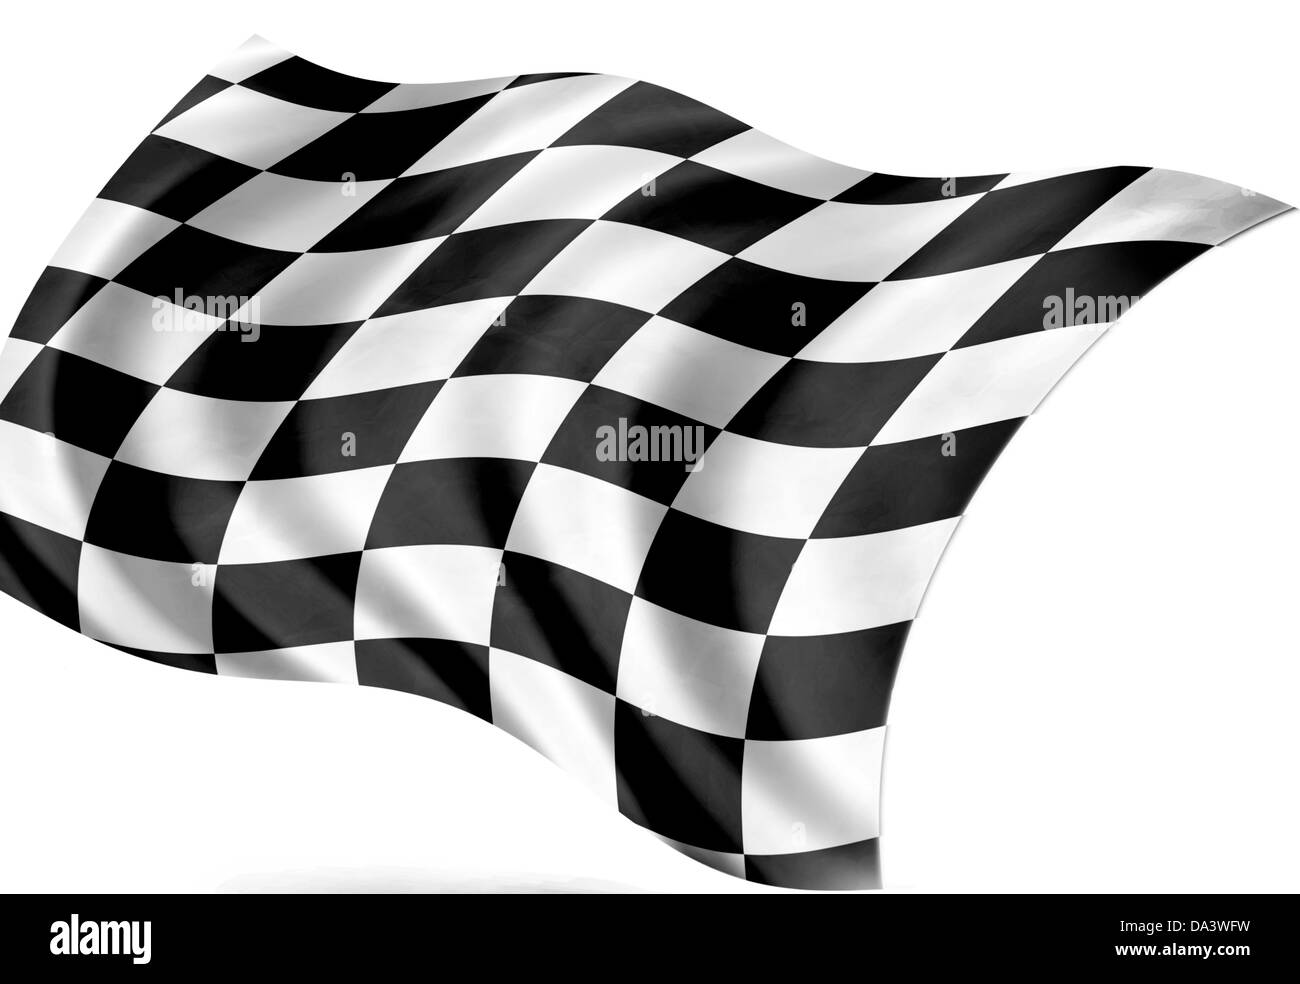 start- finish flag, isolated Stock Photo